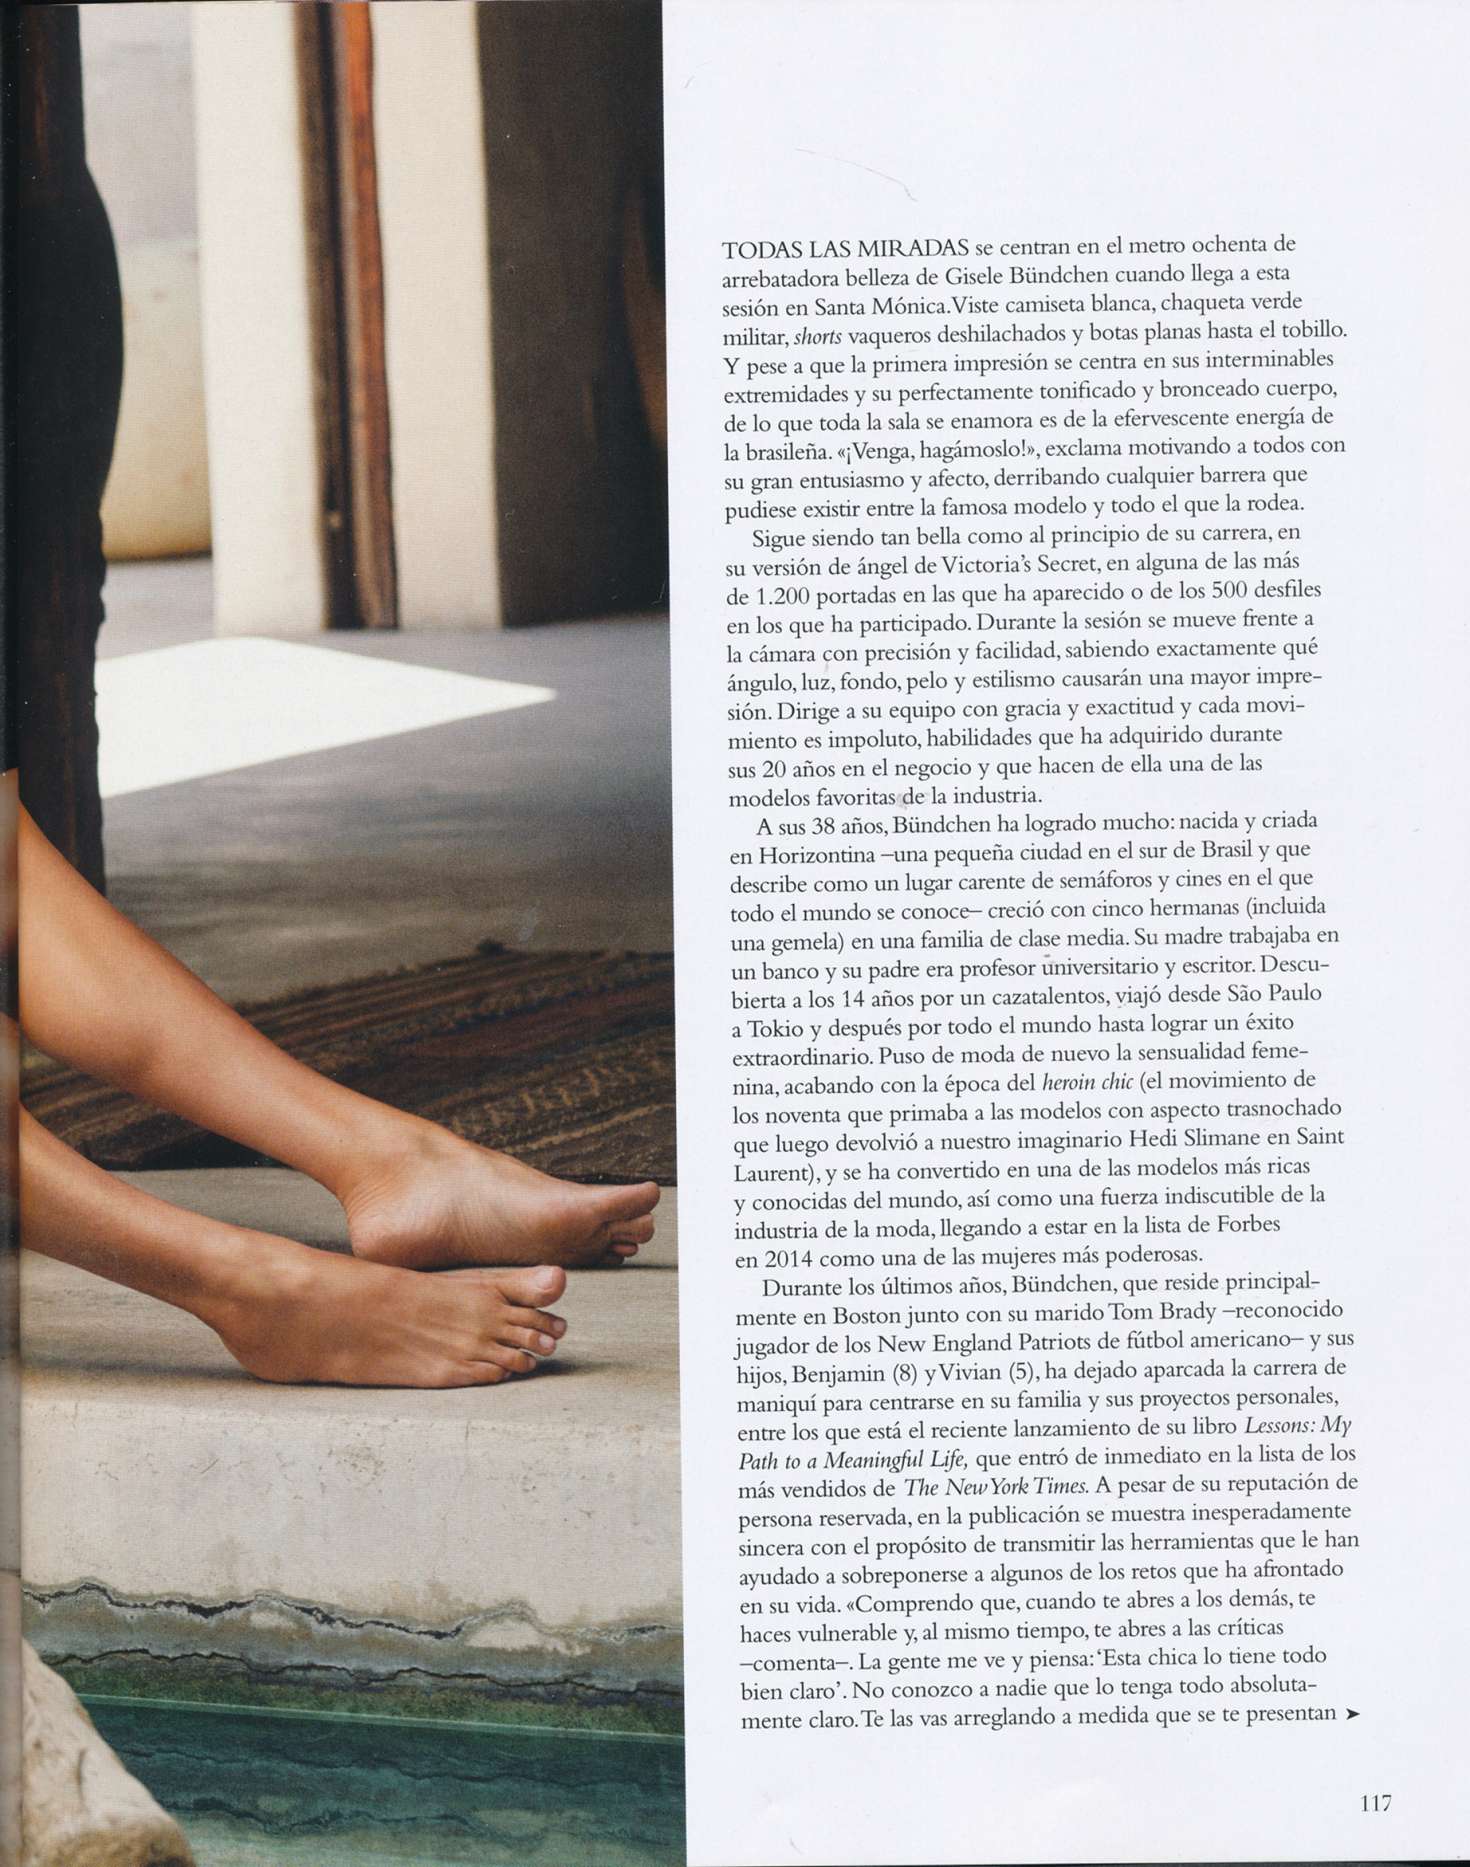 Gisele Bundchen â€“ Harperâ€™s Bazaar Spain Magazine (January 2019)